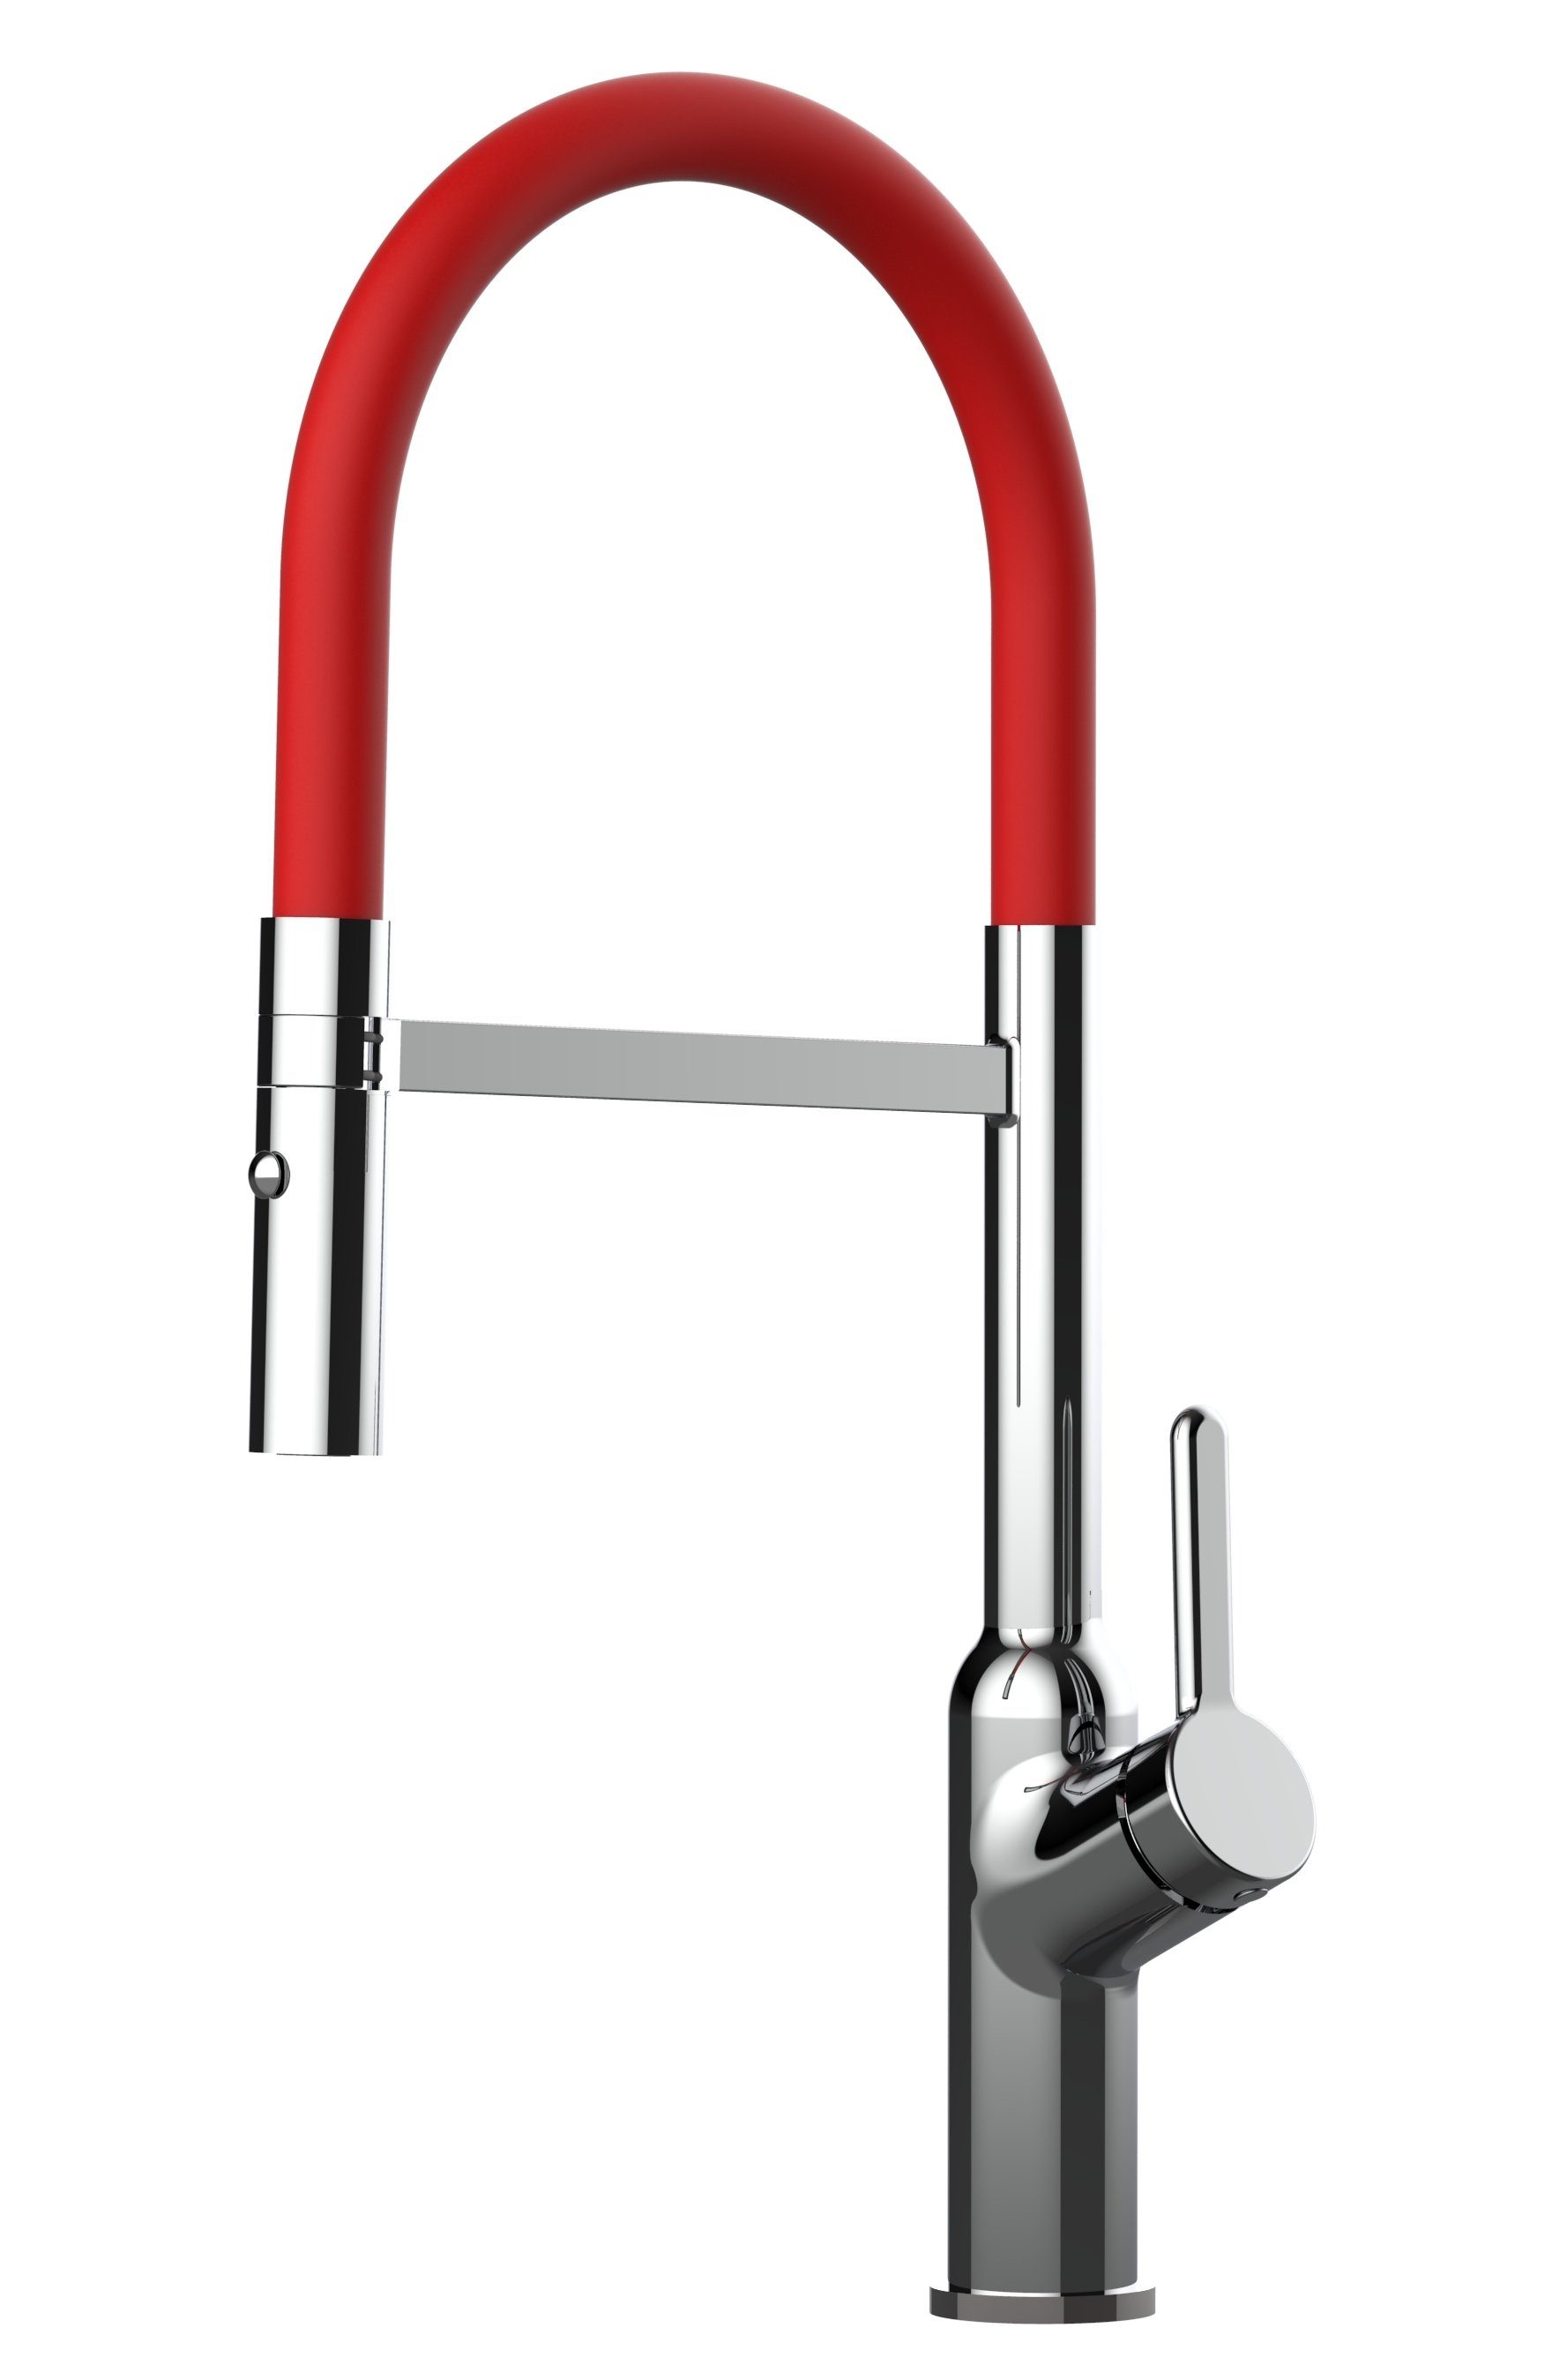 VIZIO Küchenarmatur Design Küchenarmatur chrom Wasserhahn mit 360° schwenkbarem Auslauf und abnehmbarer 2 strahl Brause Hochdruck, Hochwertige Verchromung, mit 2Strahl Brause Chrom / Rot